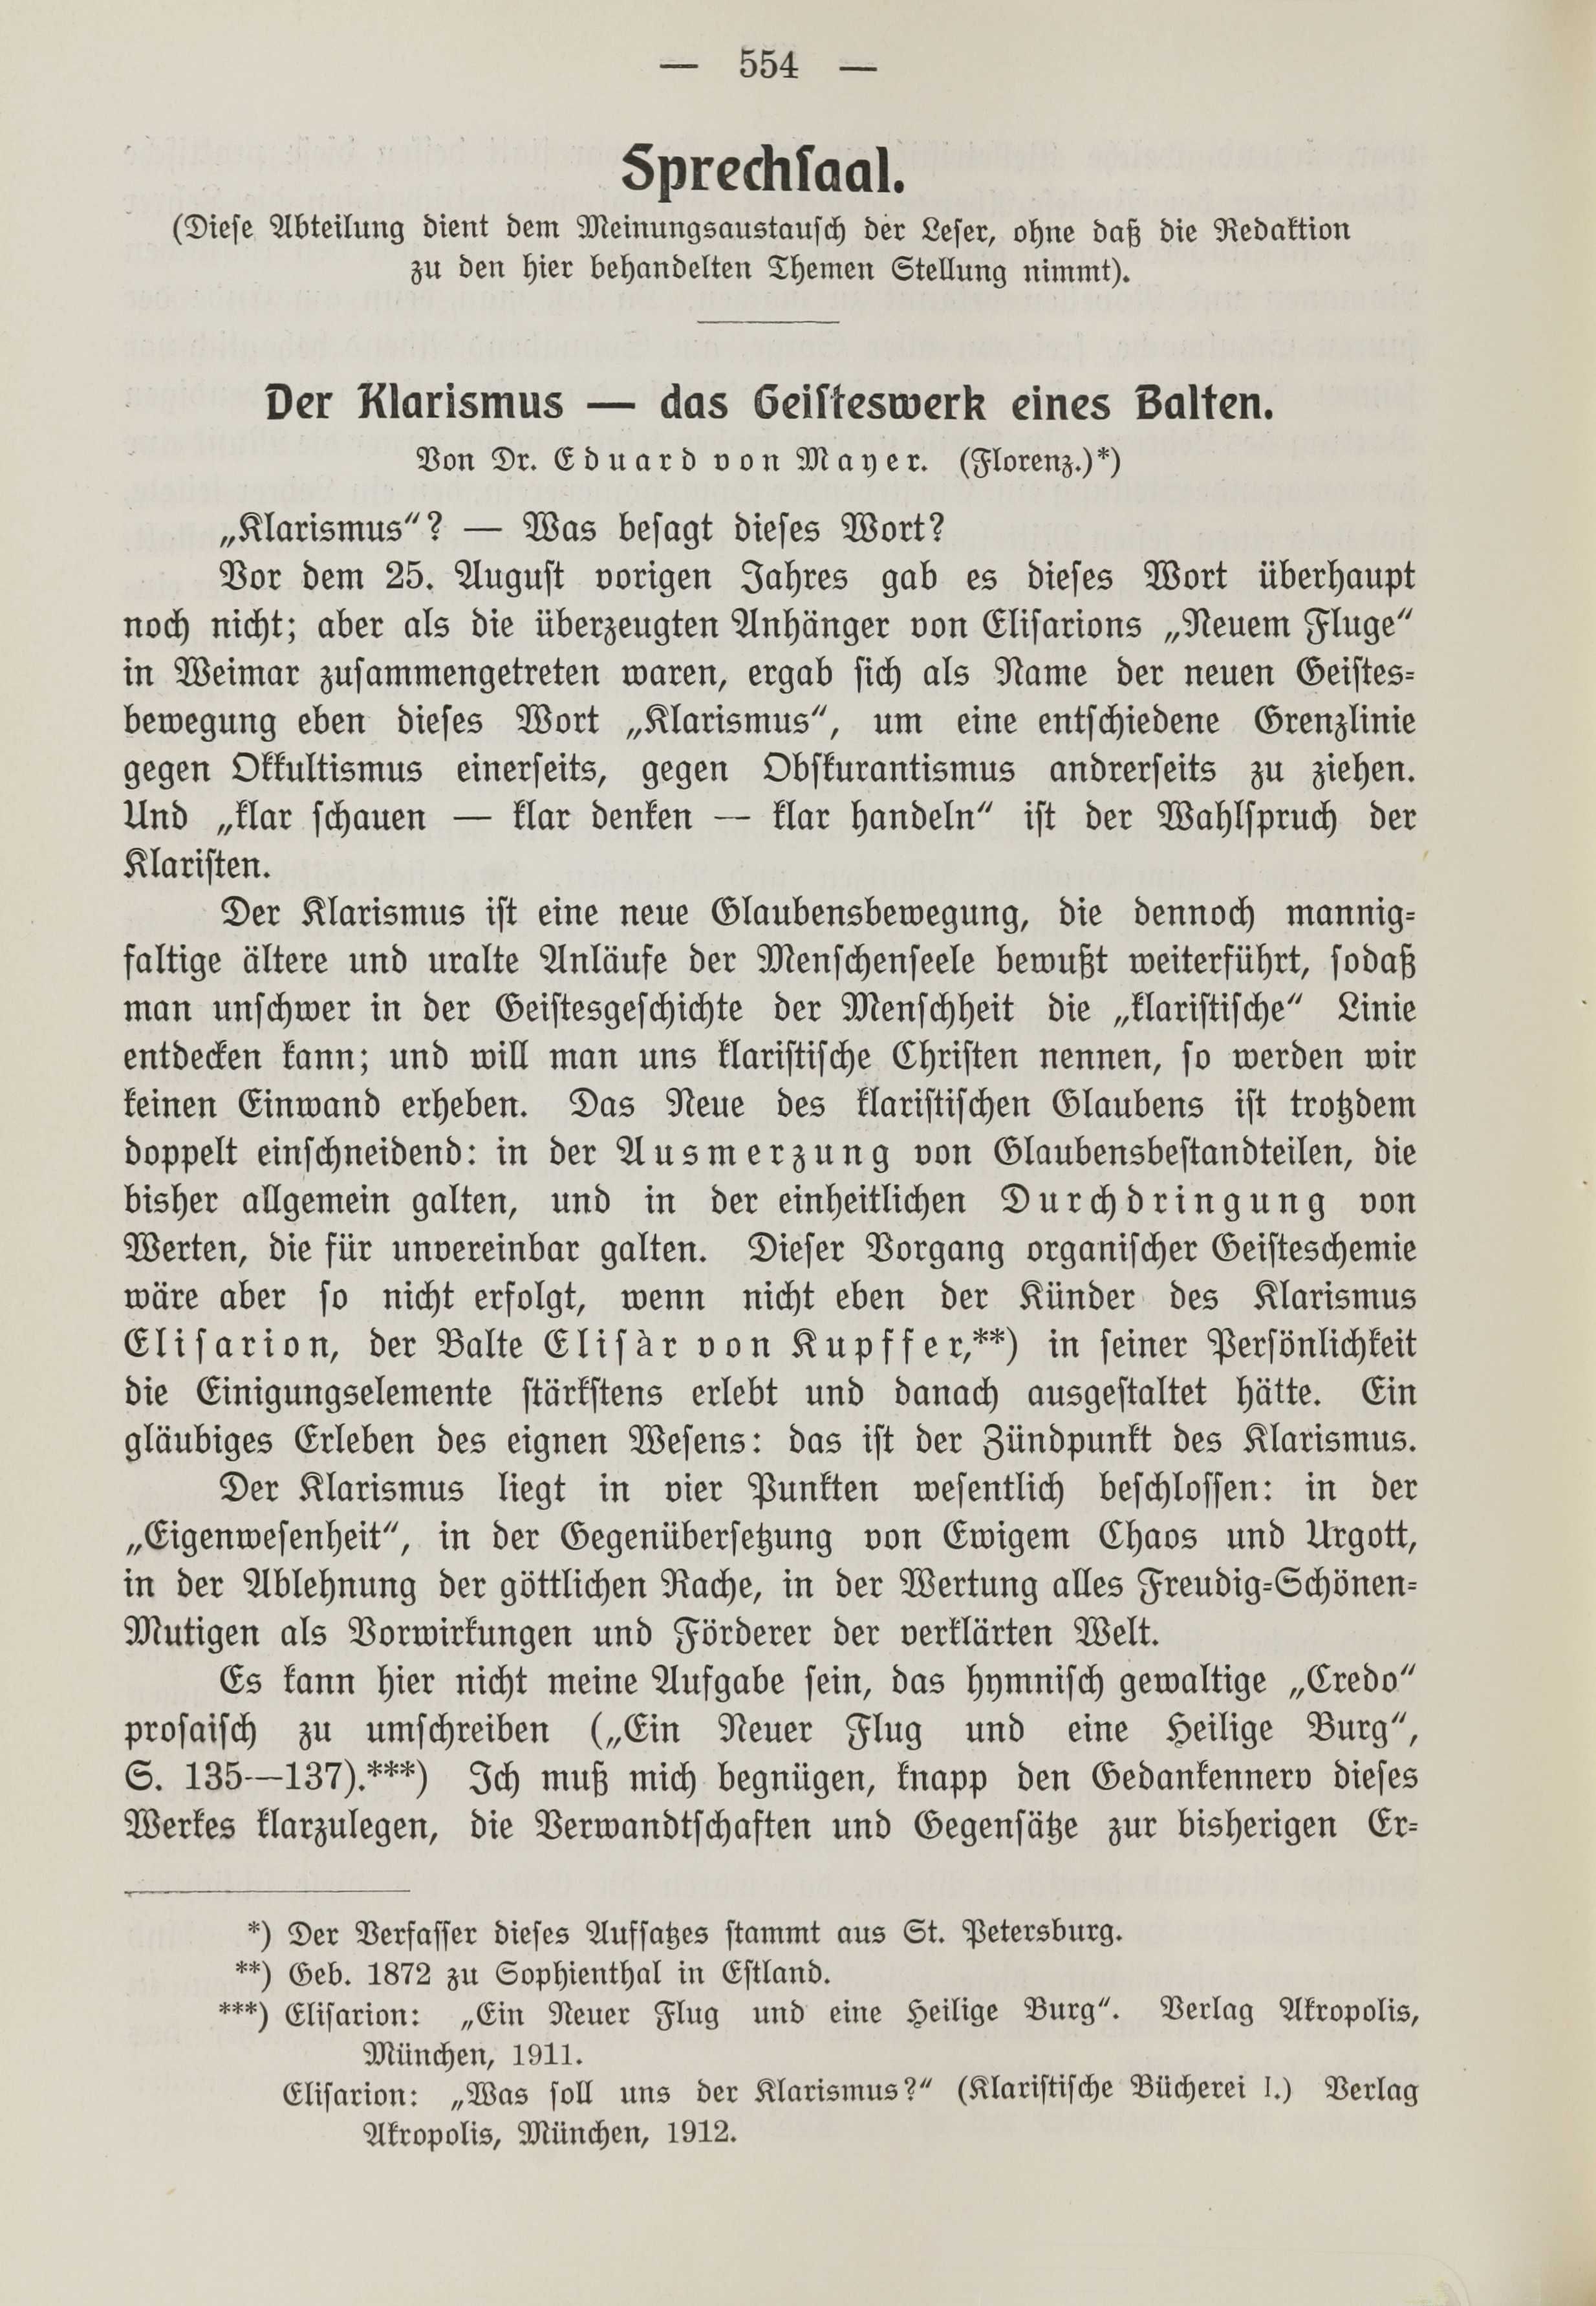 Der Klarismus - das Geisteswerk eines Balten (1912) | 1. (554) Основной текст